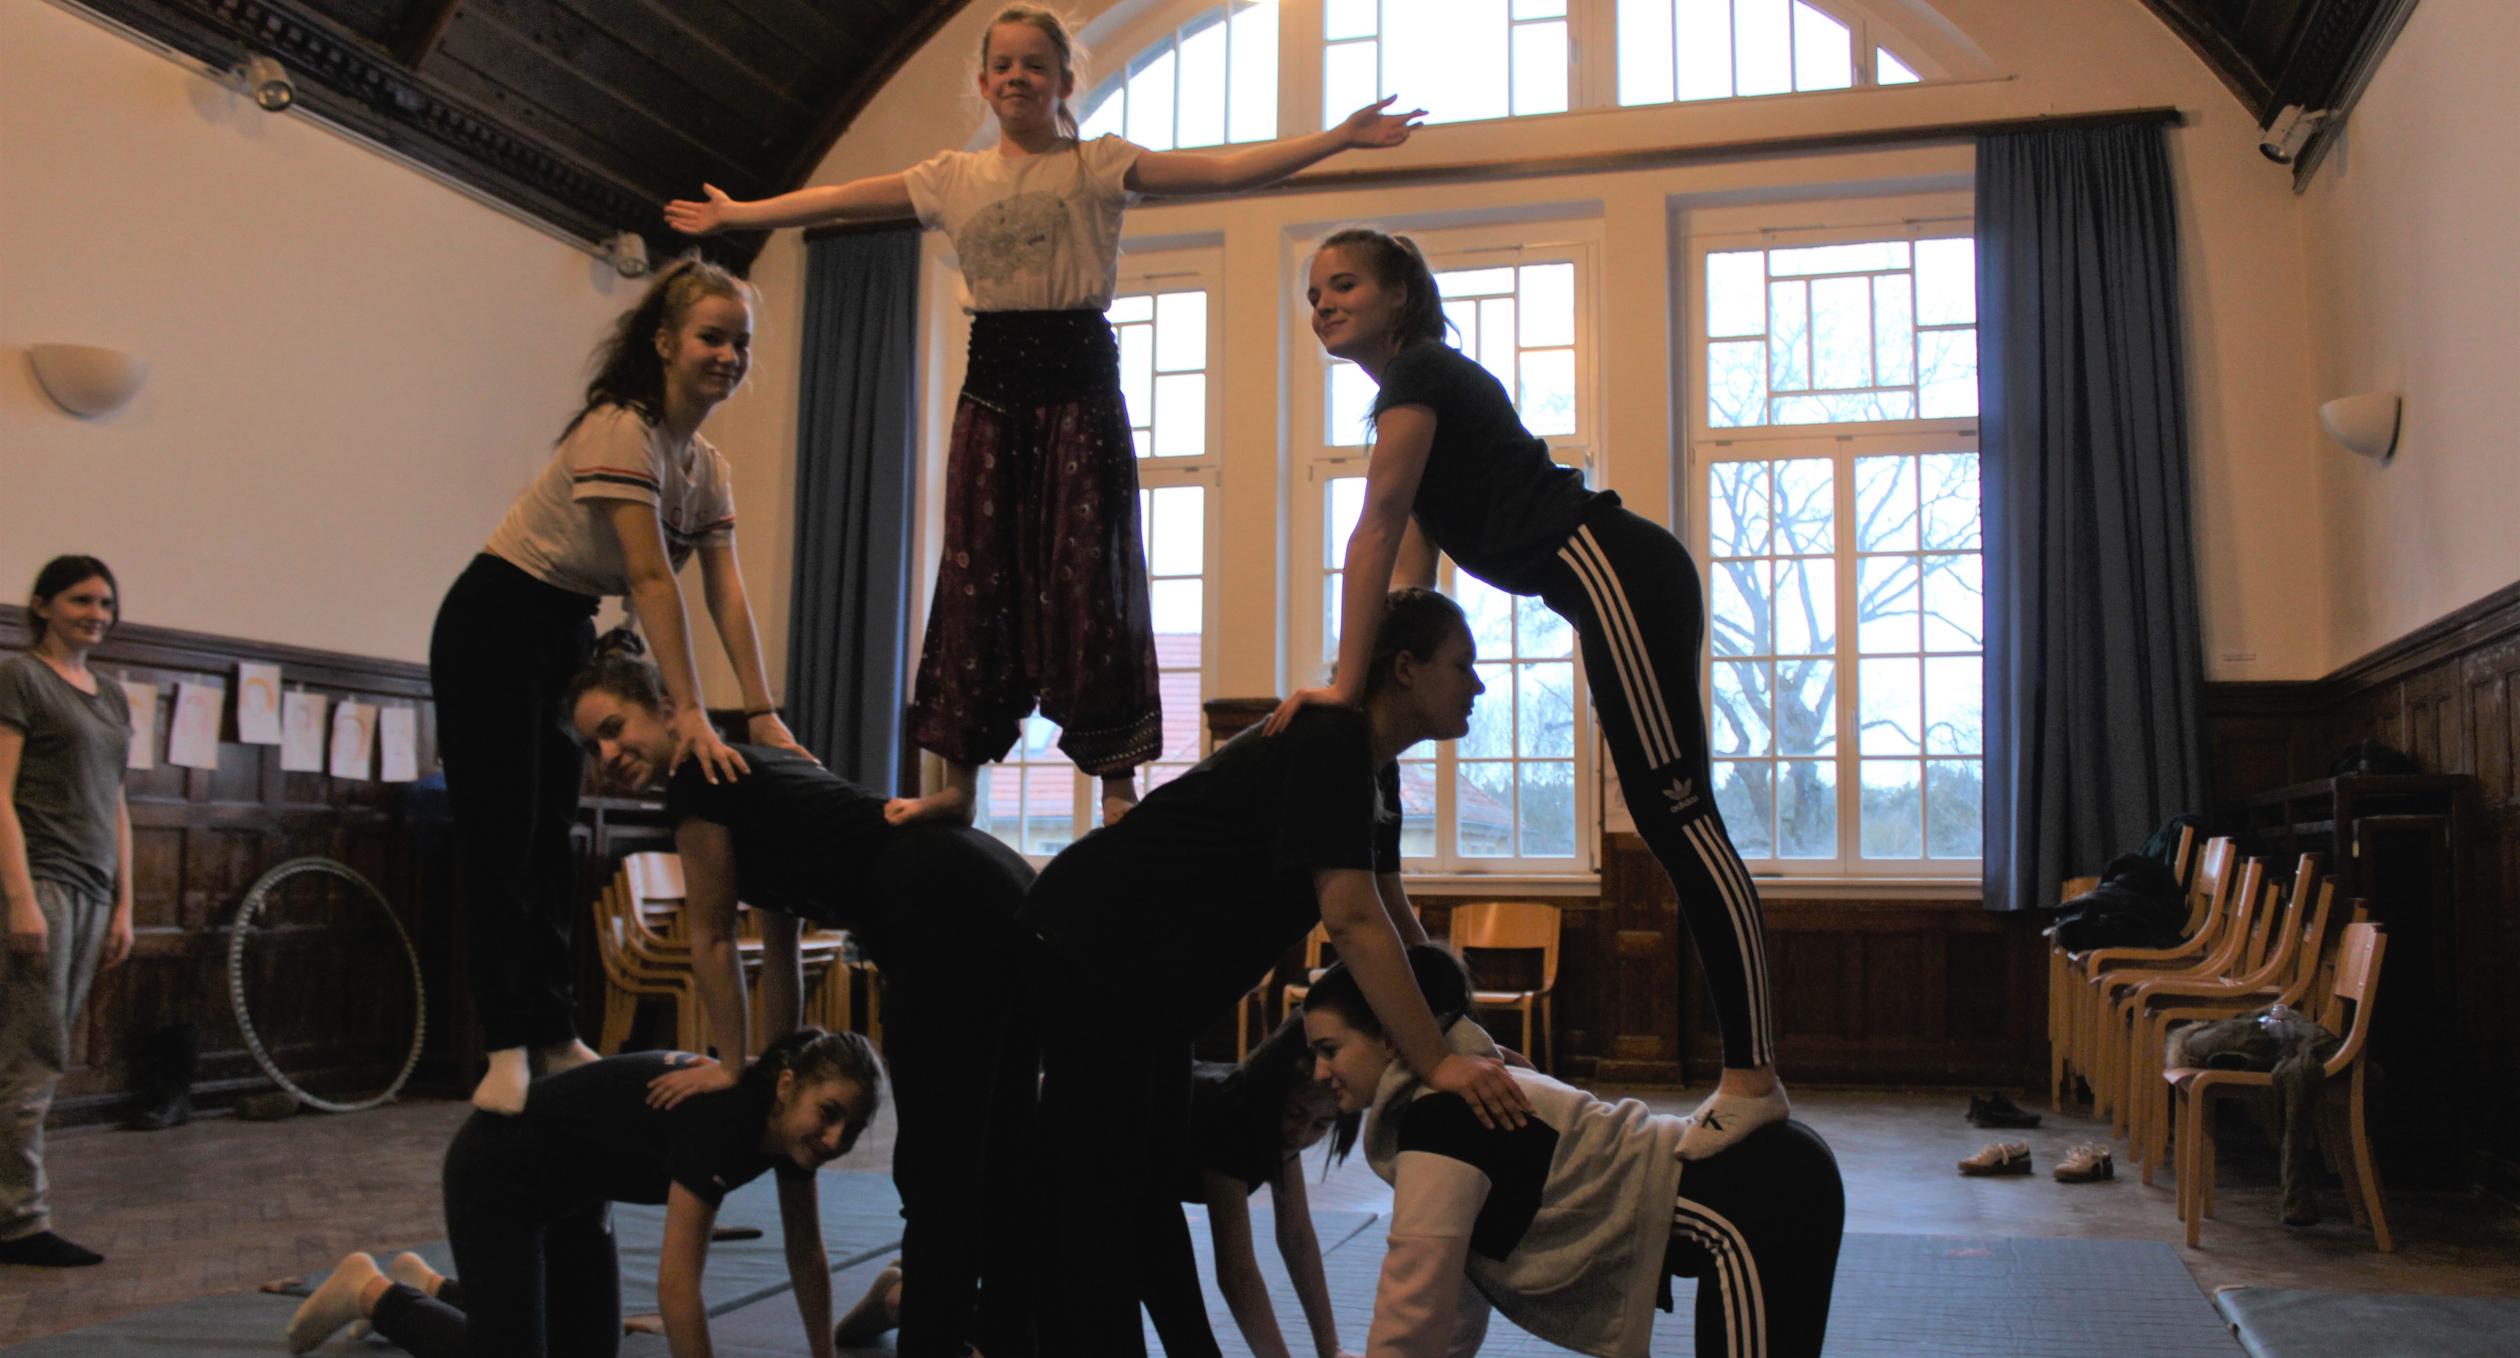 Mädchen bauen eine menschliche Pyramide - Akrobatik bei "Girls bite" 2019